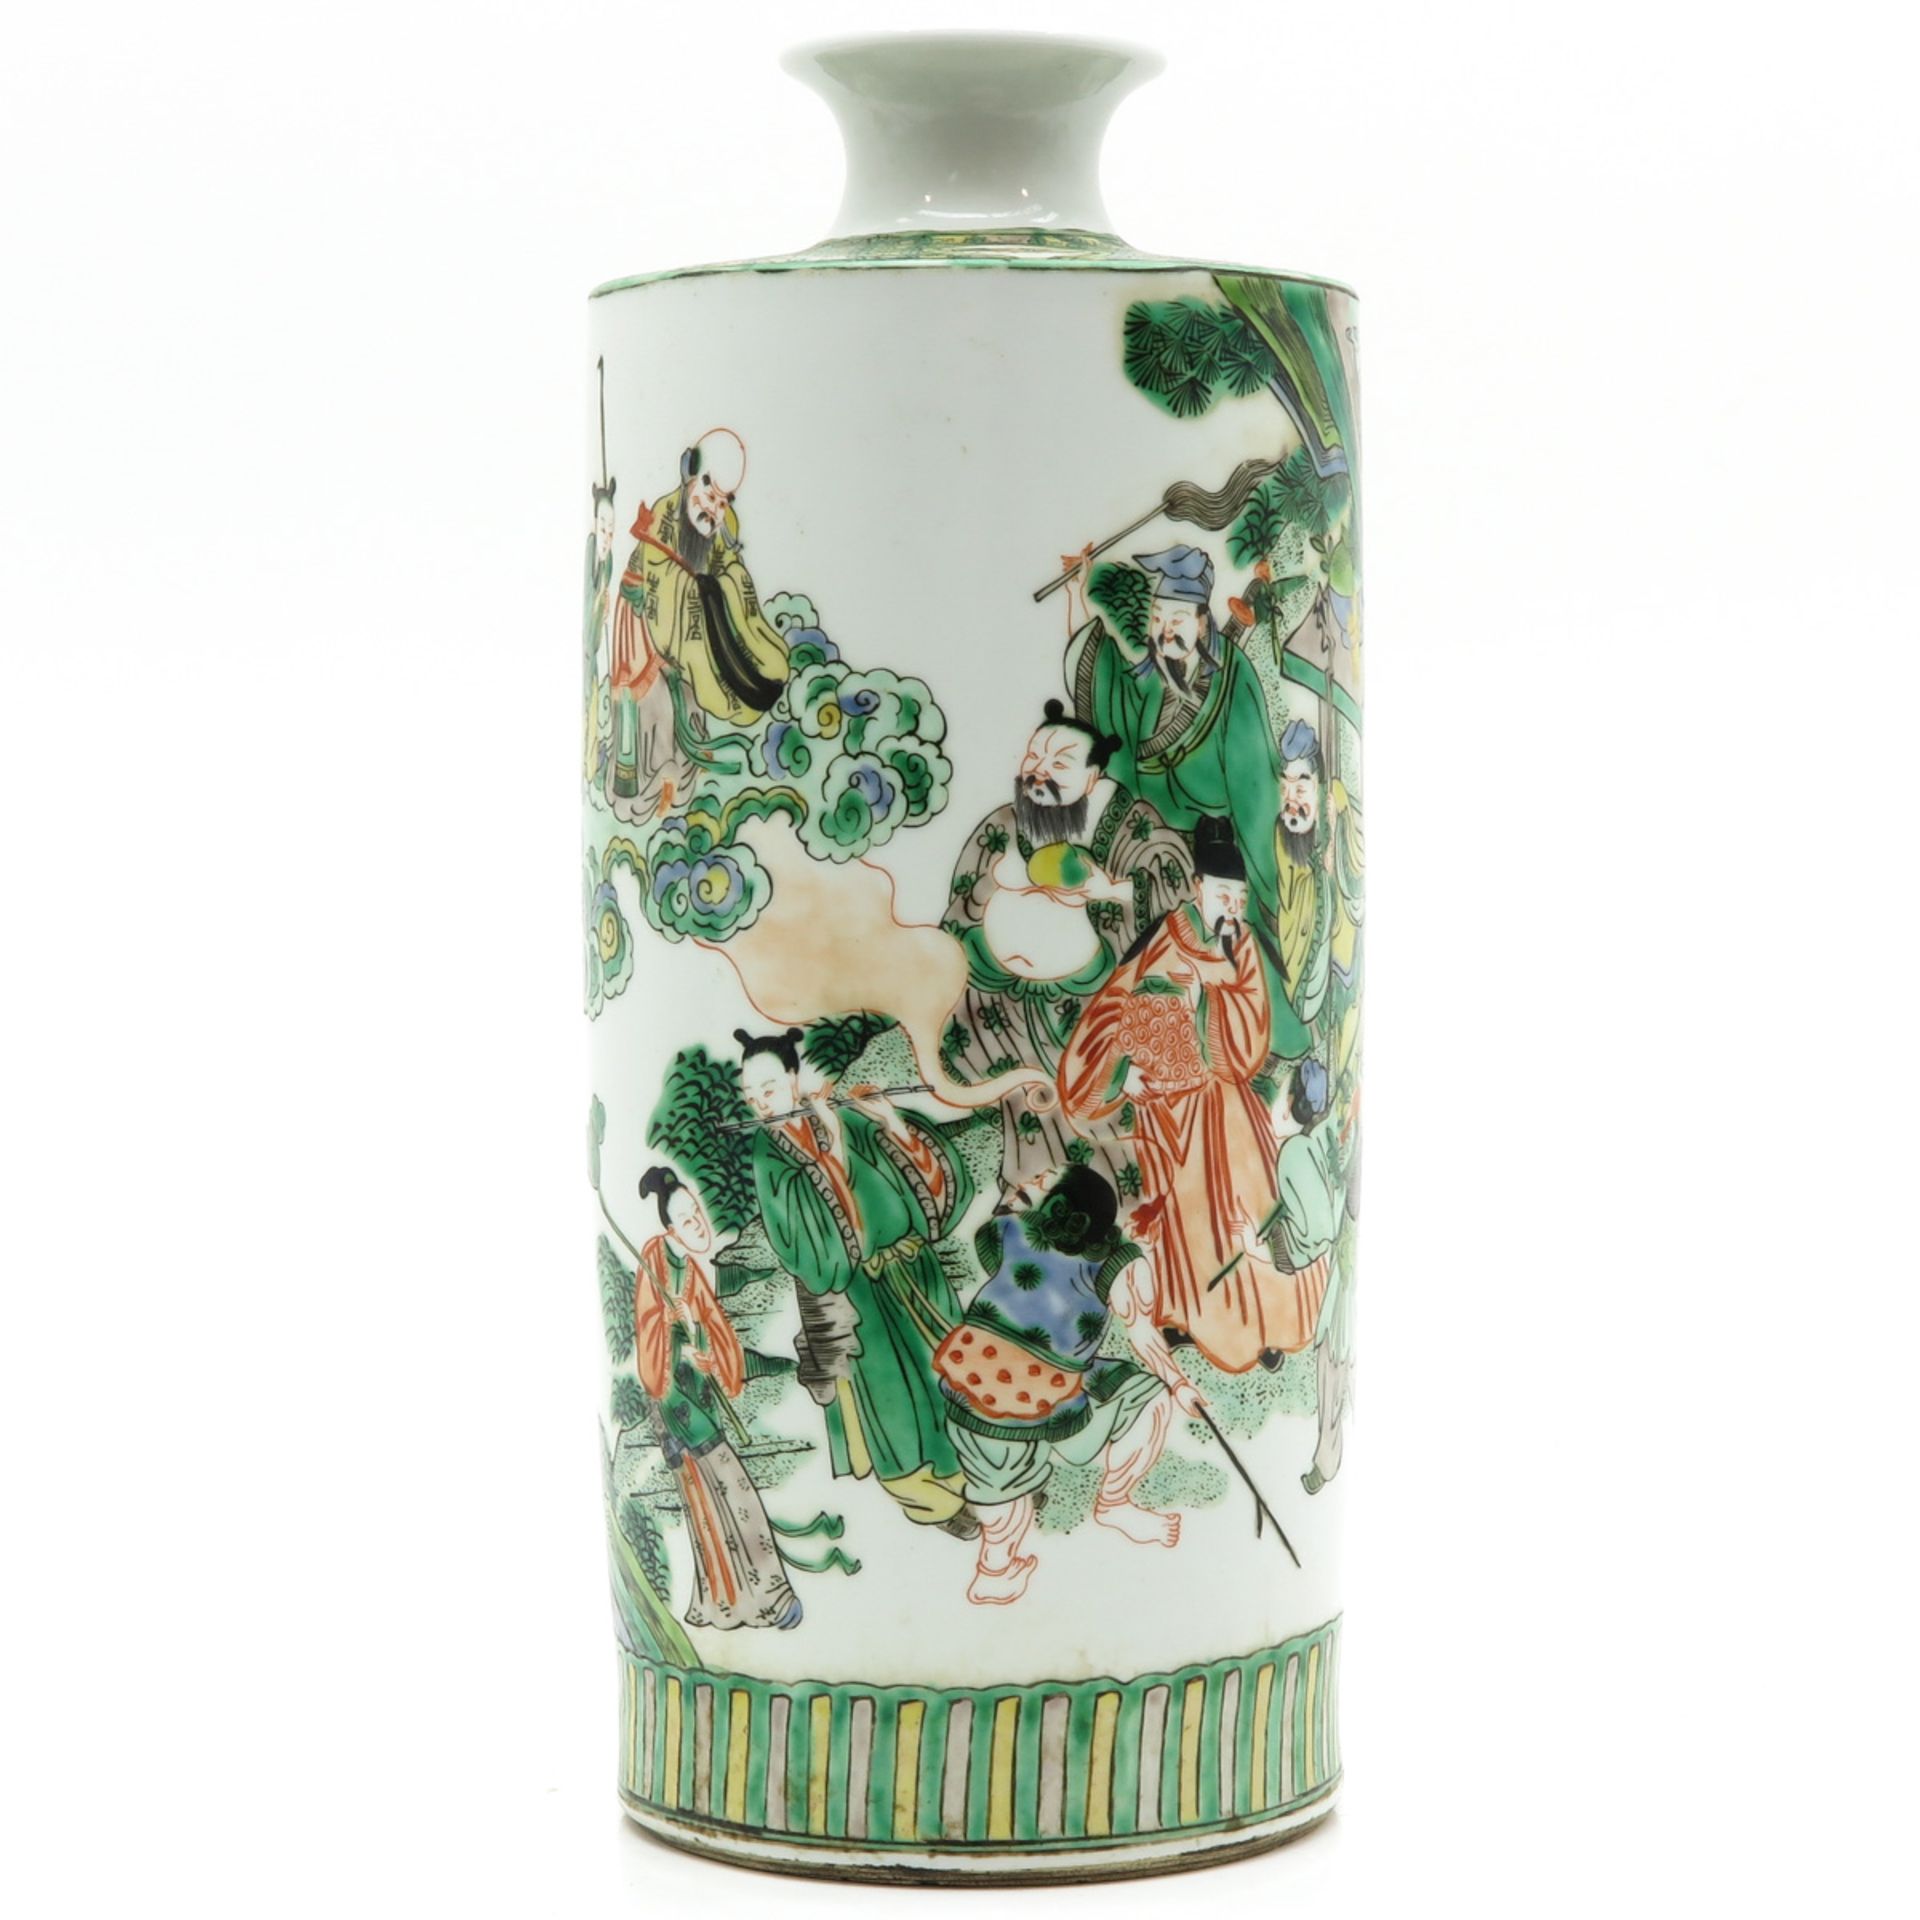 China Porcelain Famille Verte Decor Vase